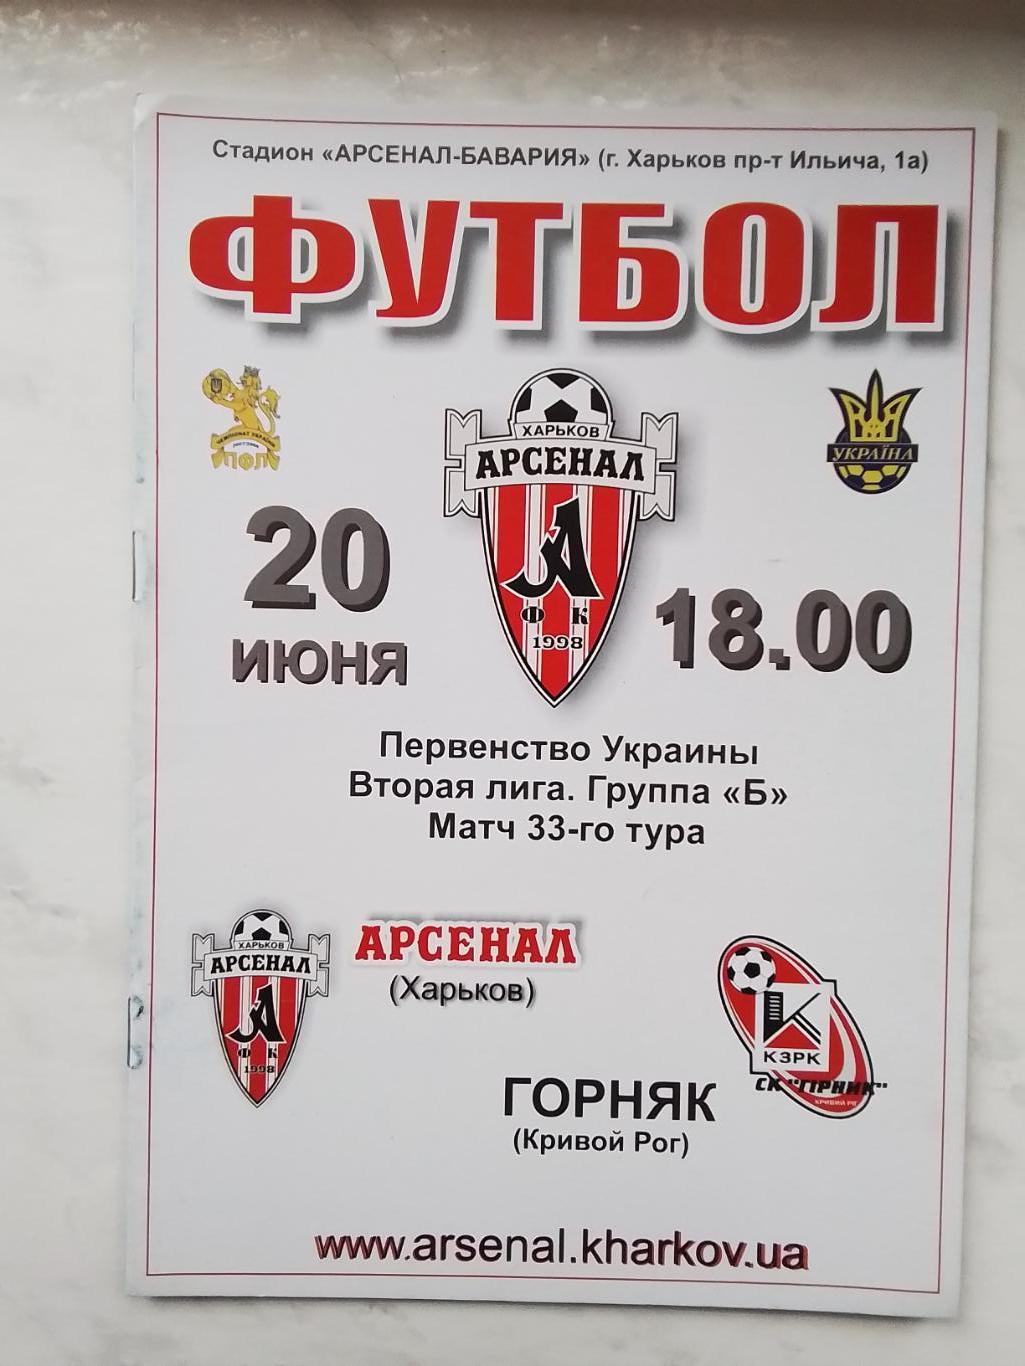 Арсенал Харьков - Горняк Кривой Рог 2007 - 2008